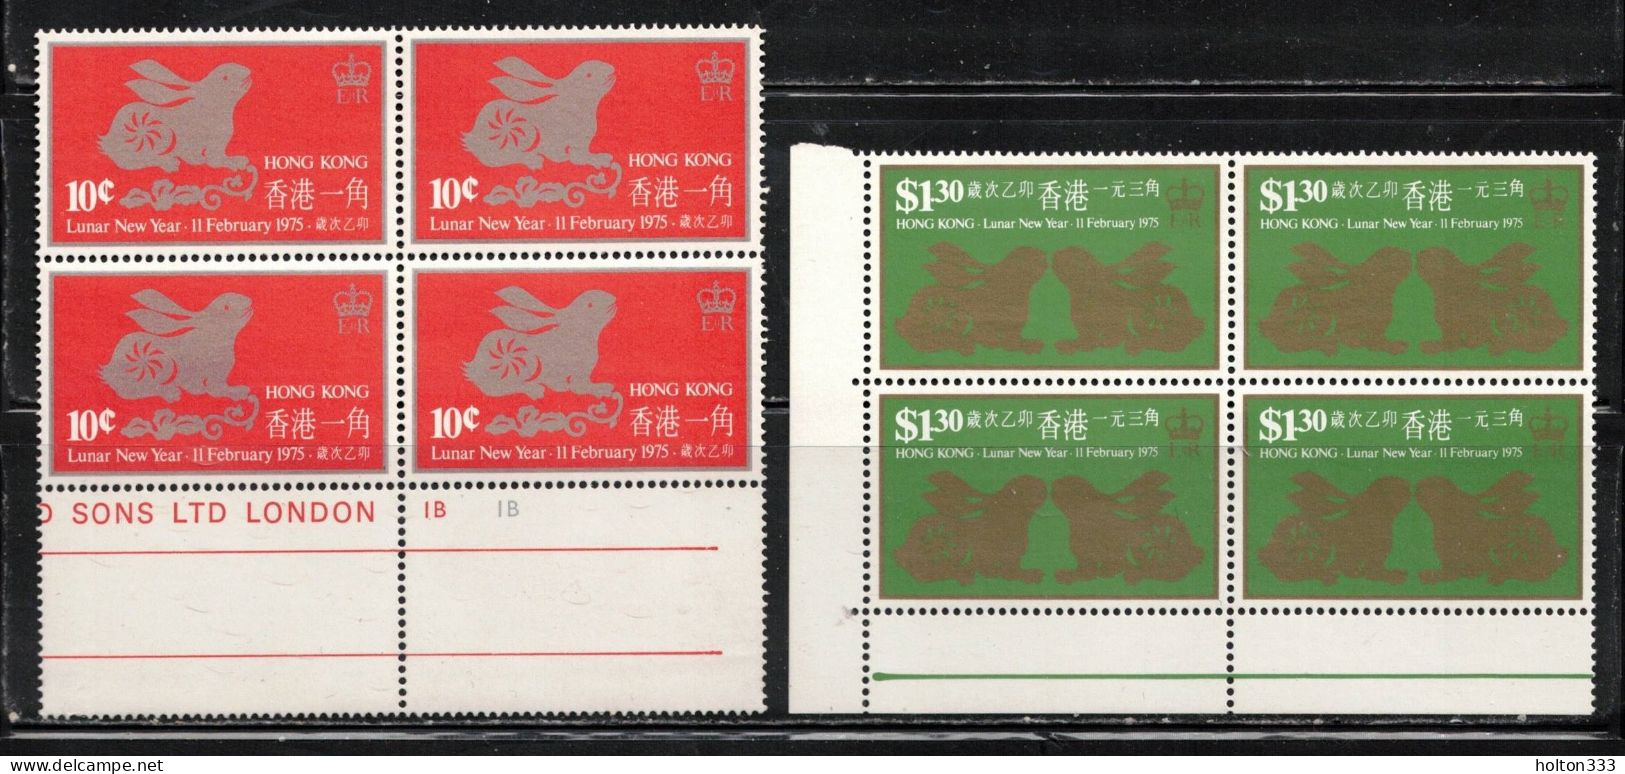 HONG KONG Scott # 302a, 303a MH Blocks - Lunar New Year 1975 No Watermark - Neufs